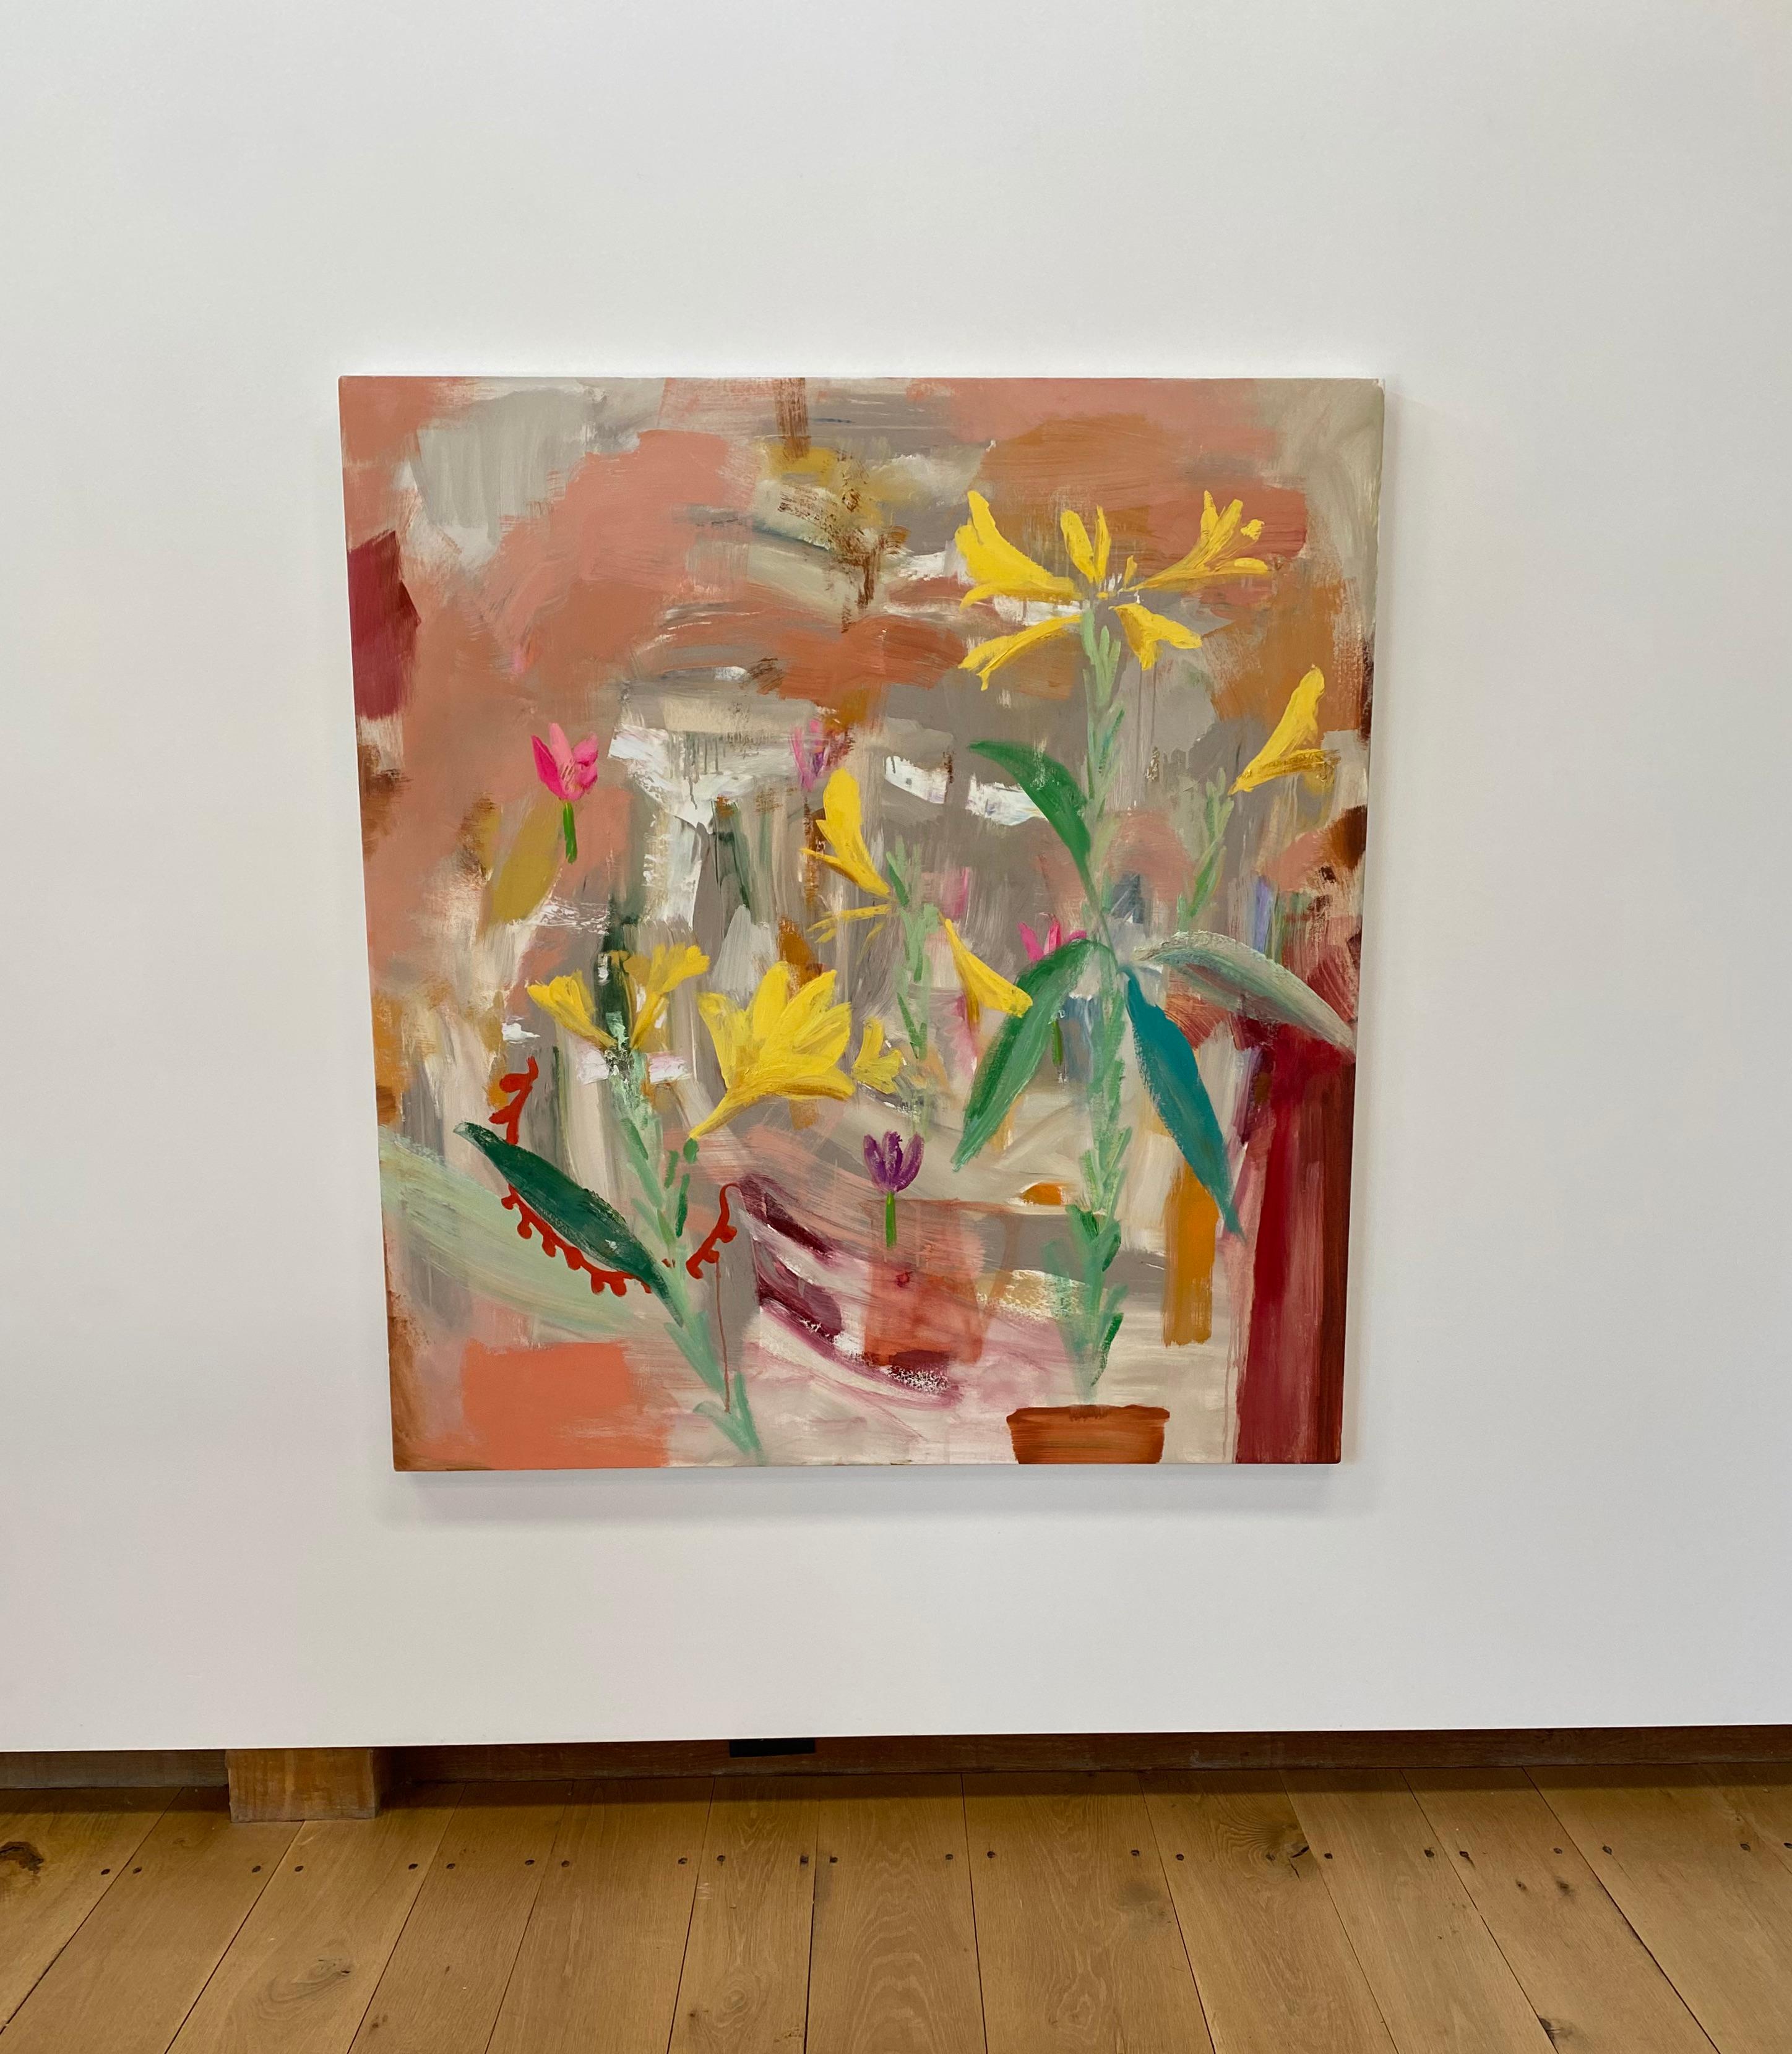 Prima Porta, fleurs de lys jaunes, verts, rouges, botanique abstraite, pêche, saumon - Contemporain Painting par Melanie Parke